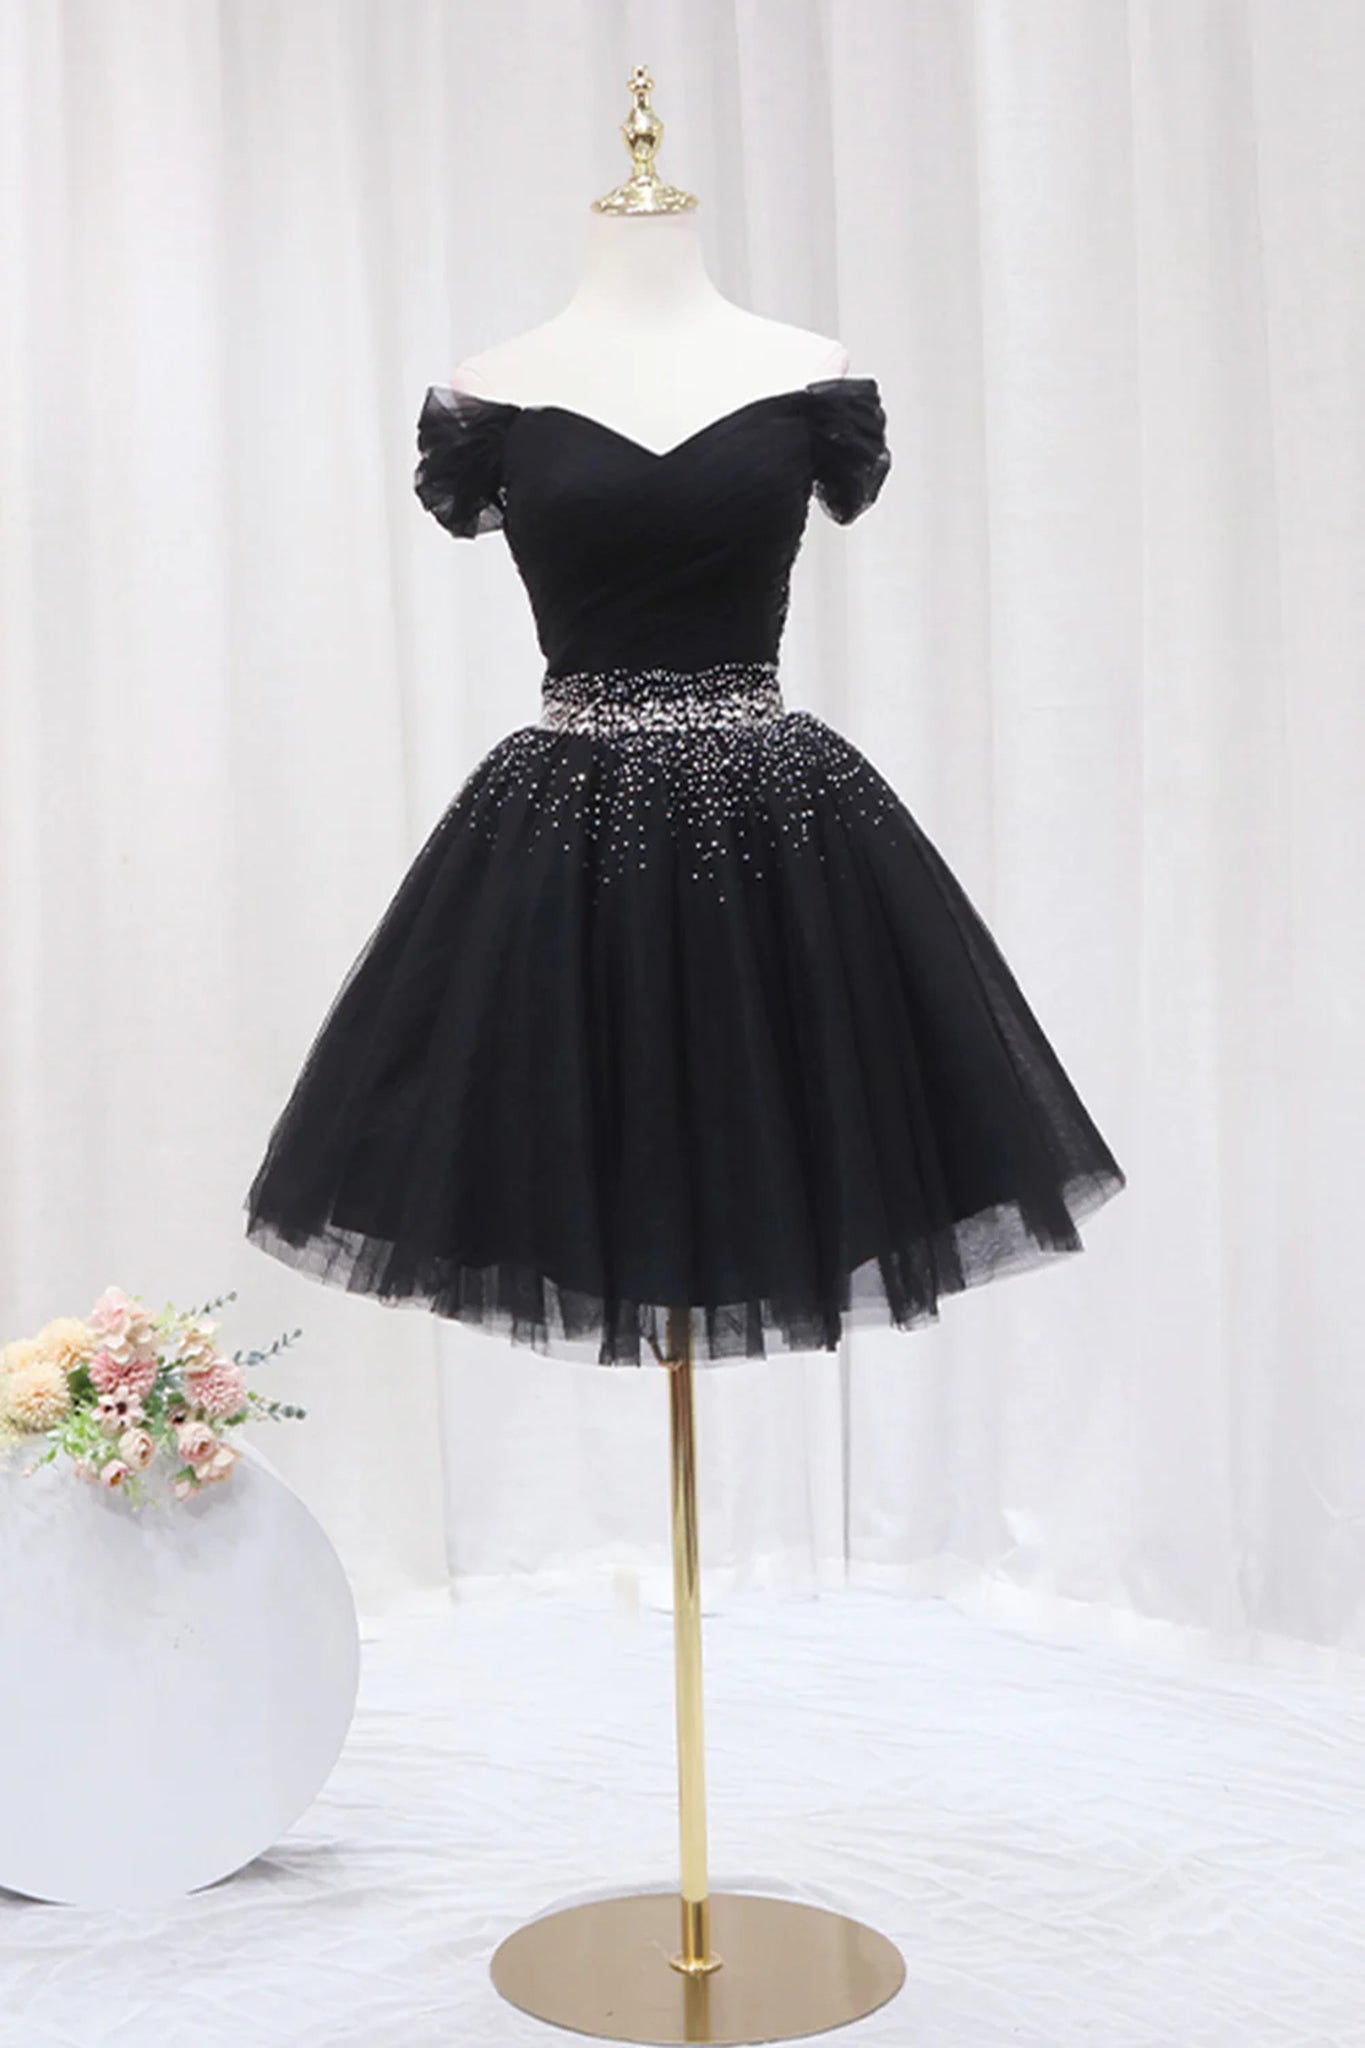 Off the Shoulder Short Black Prom Dresses, Off Shoulder Short Black Formal Homecoming Dresses